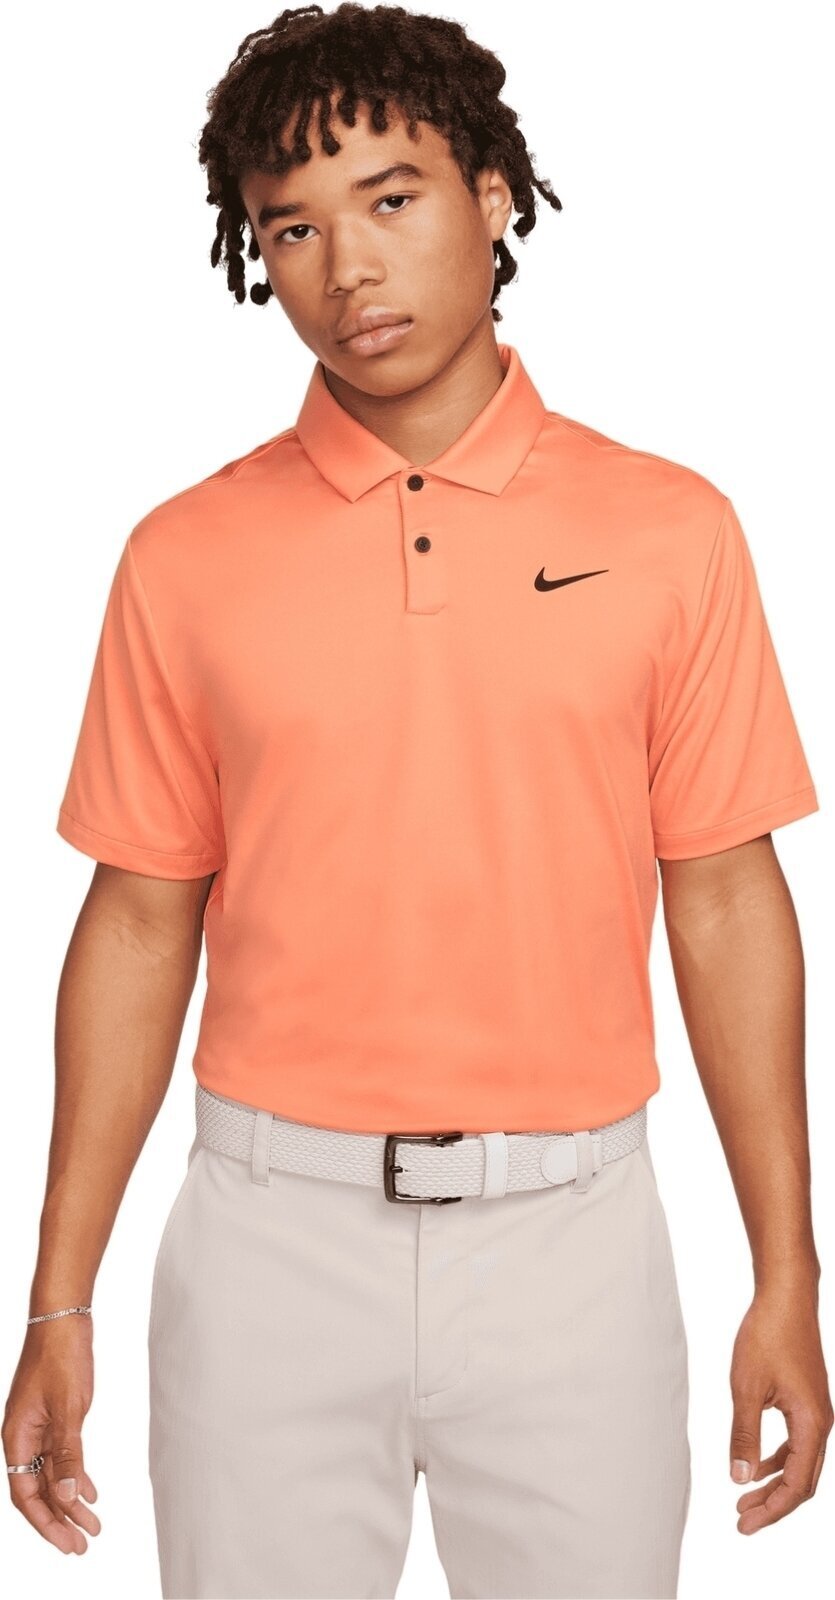 Polo košeľa Nike Dri-Fit Tour Solid Mens Polo Orange Trance/Black S Polo košeľa